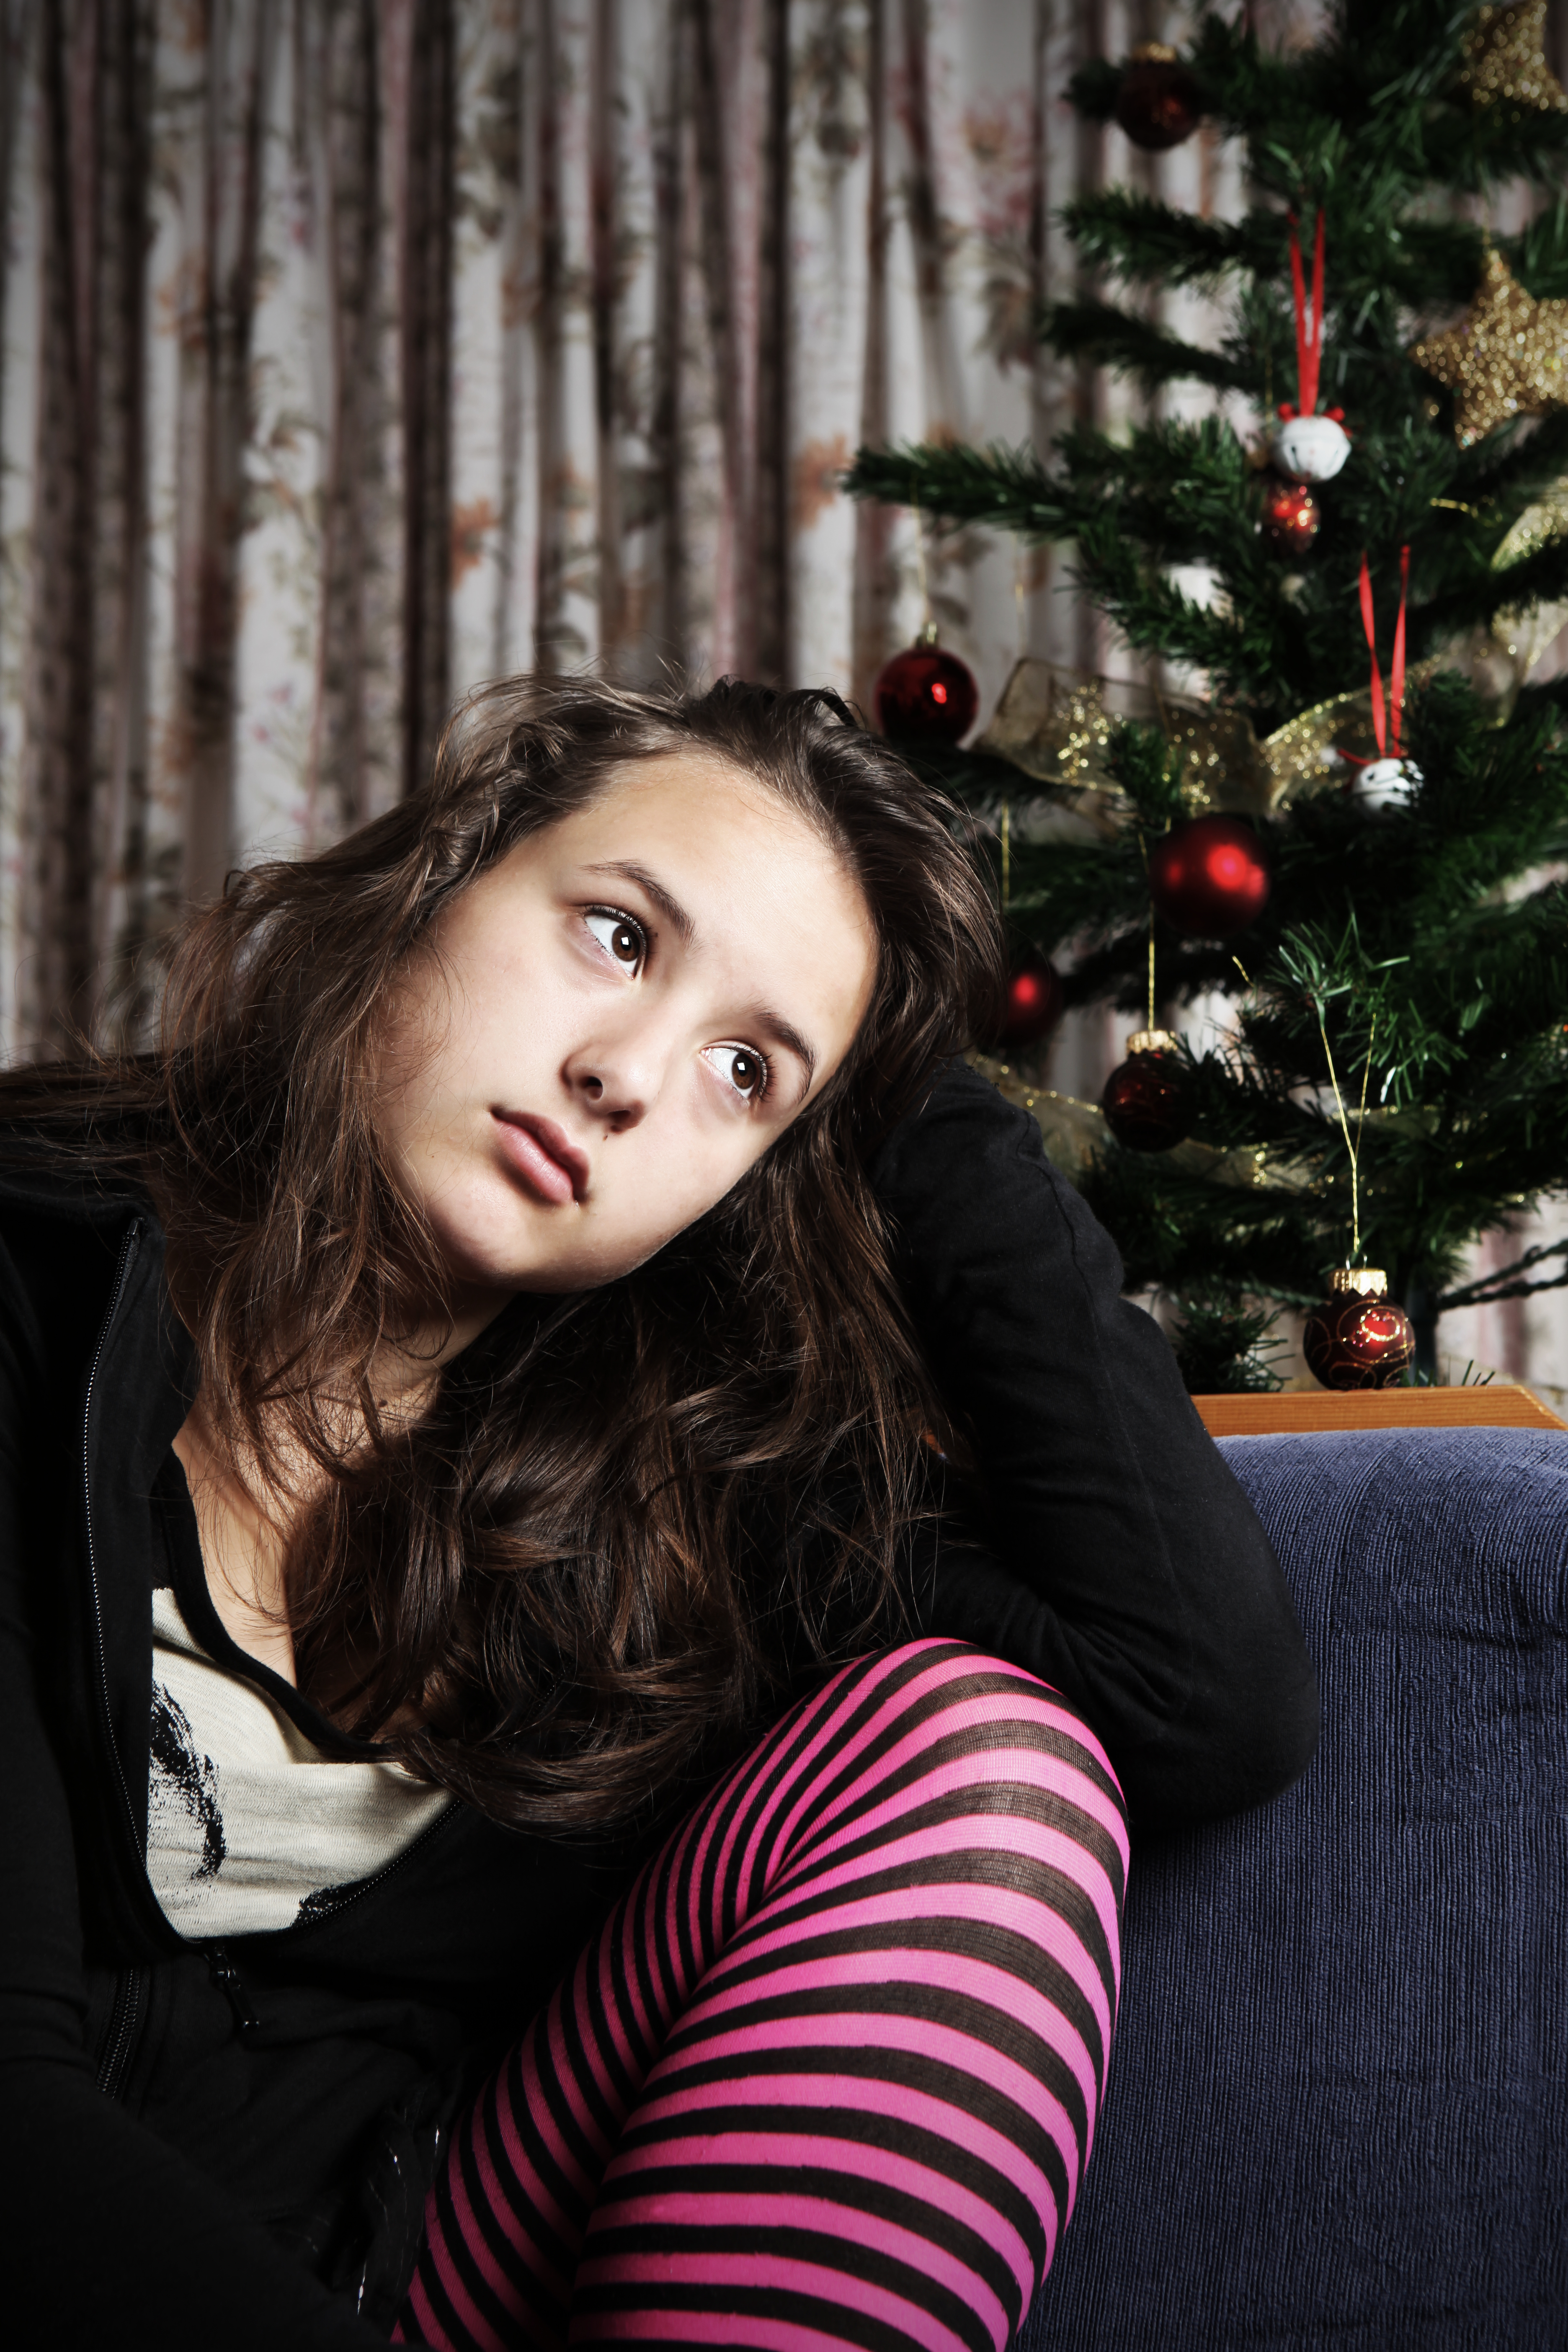 Une adolescente triste assise à côté d'un sapin de Noël | Source : Getty Images